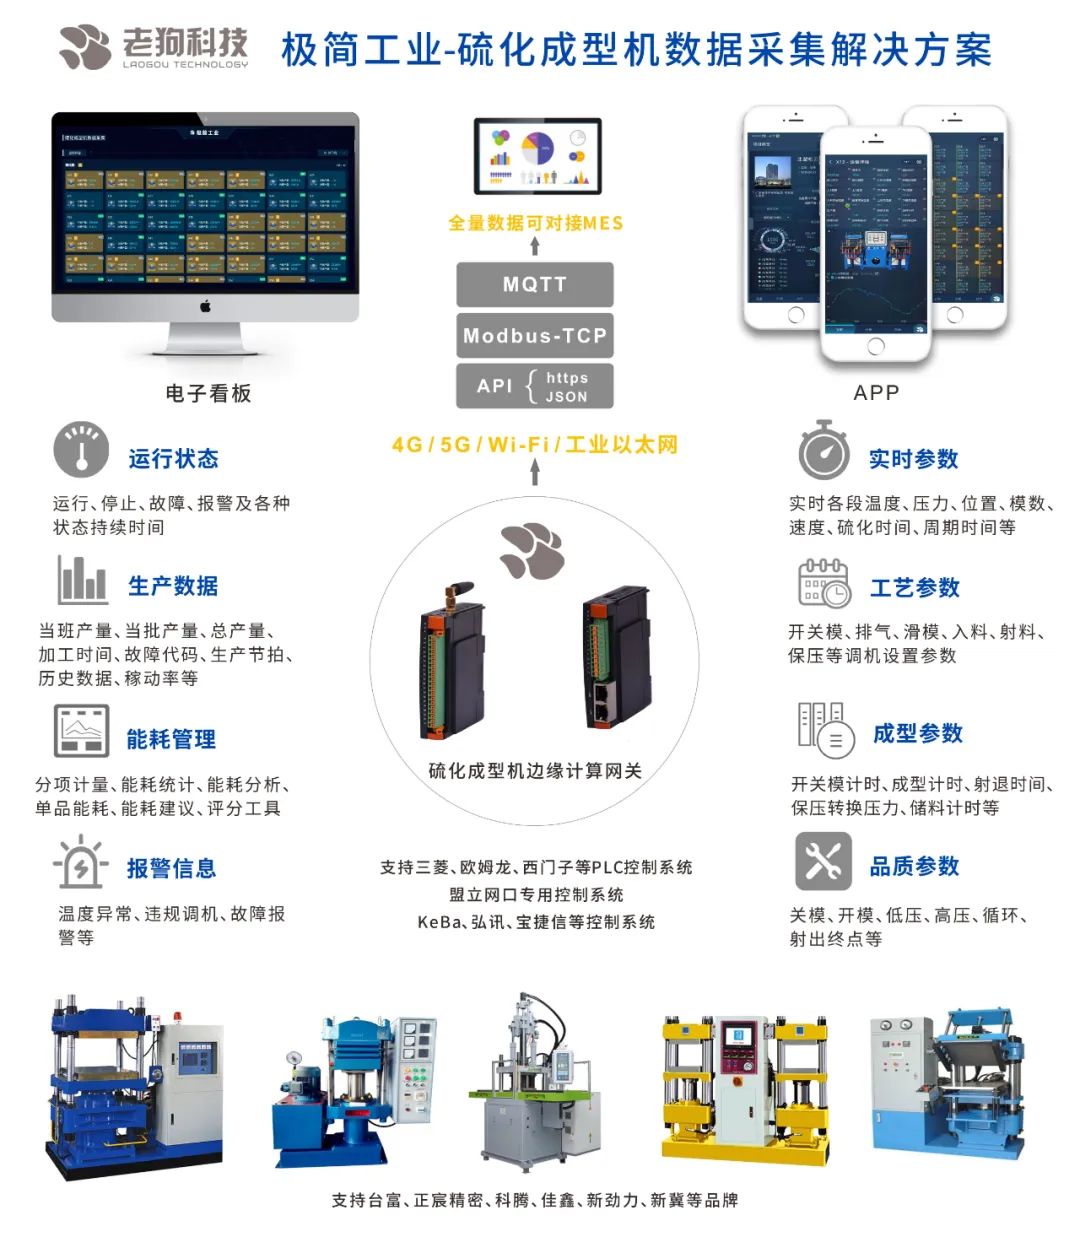 老狗科技助力广东一家大型橡塑企业数字化标杆工厂成功落地